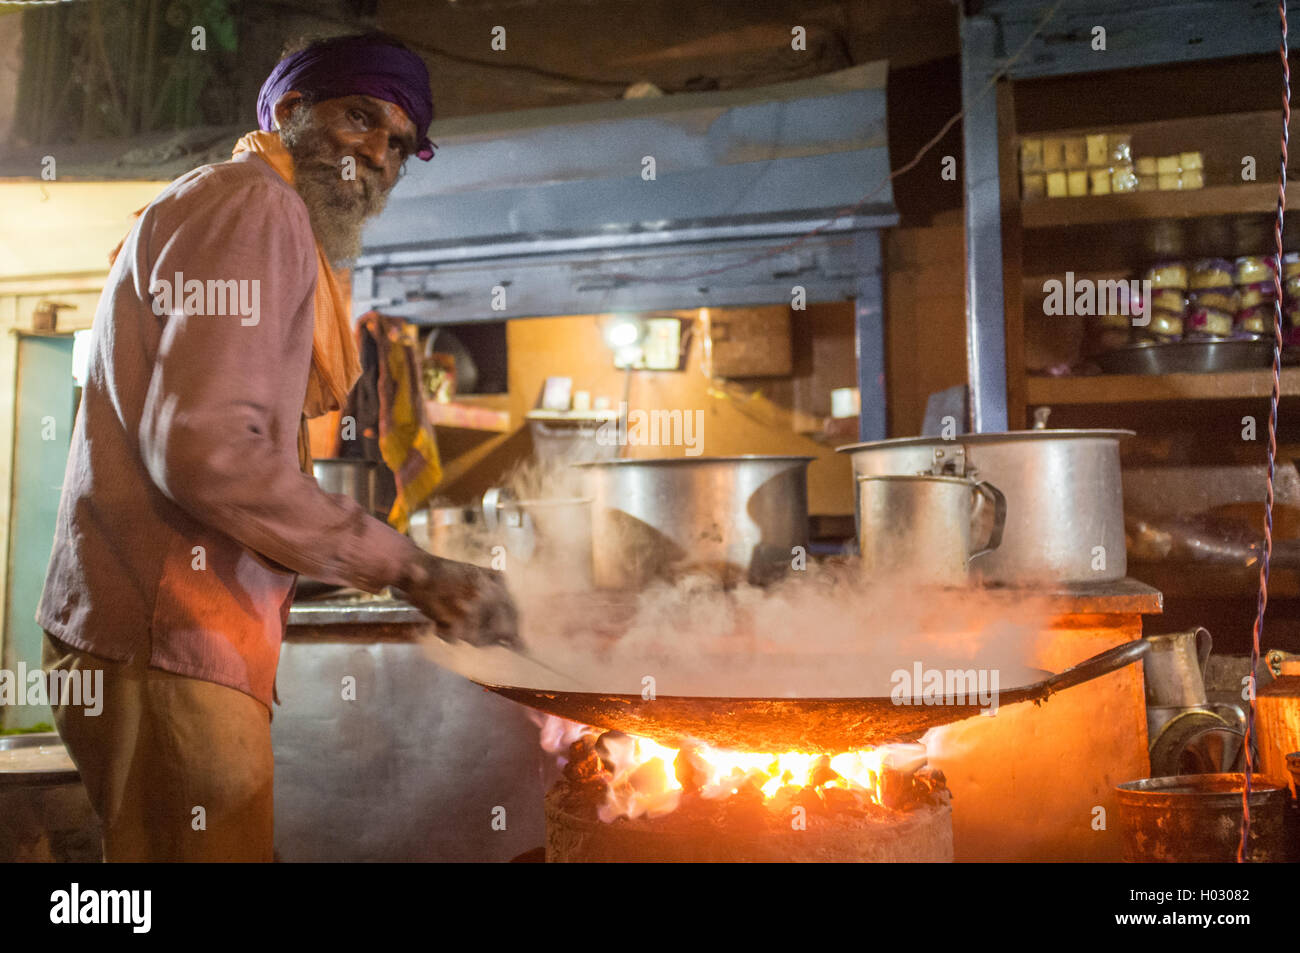 https://c8.alamy.com/comp/H03082/varanasi-india-21-february-2015-street-vendor-cooks-meal-in-big-pan-H03082.jpg